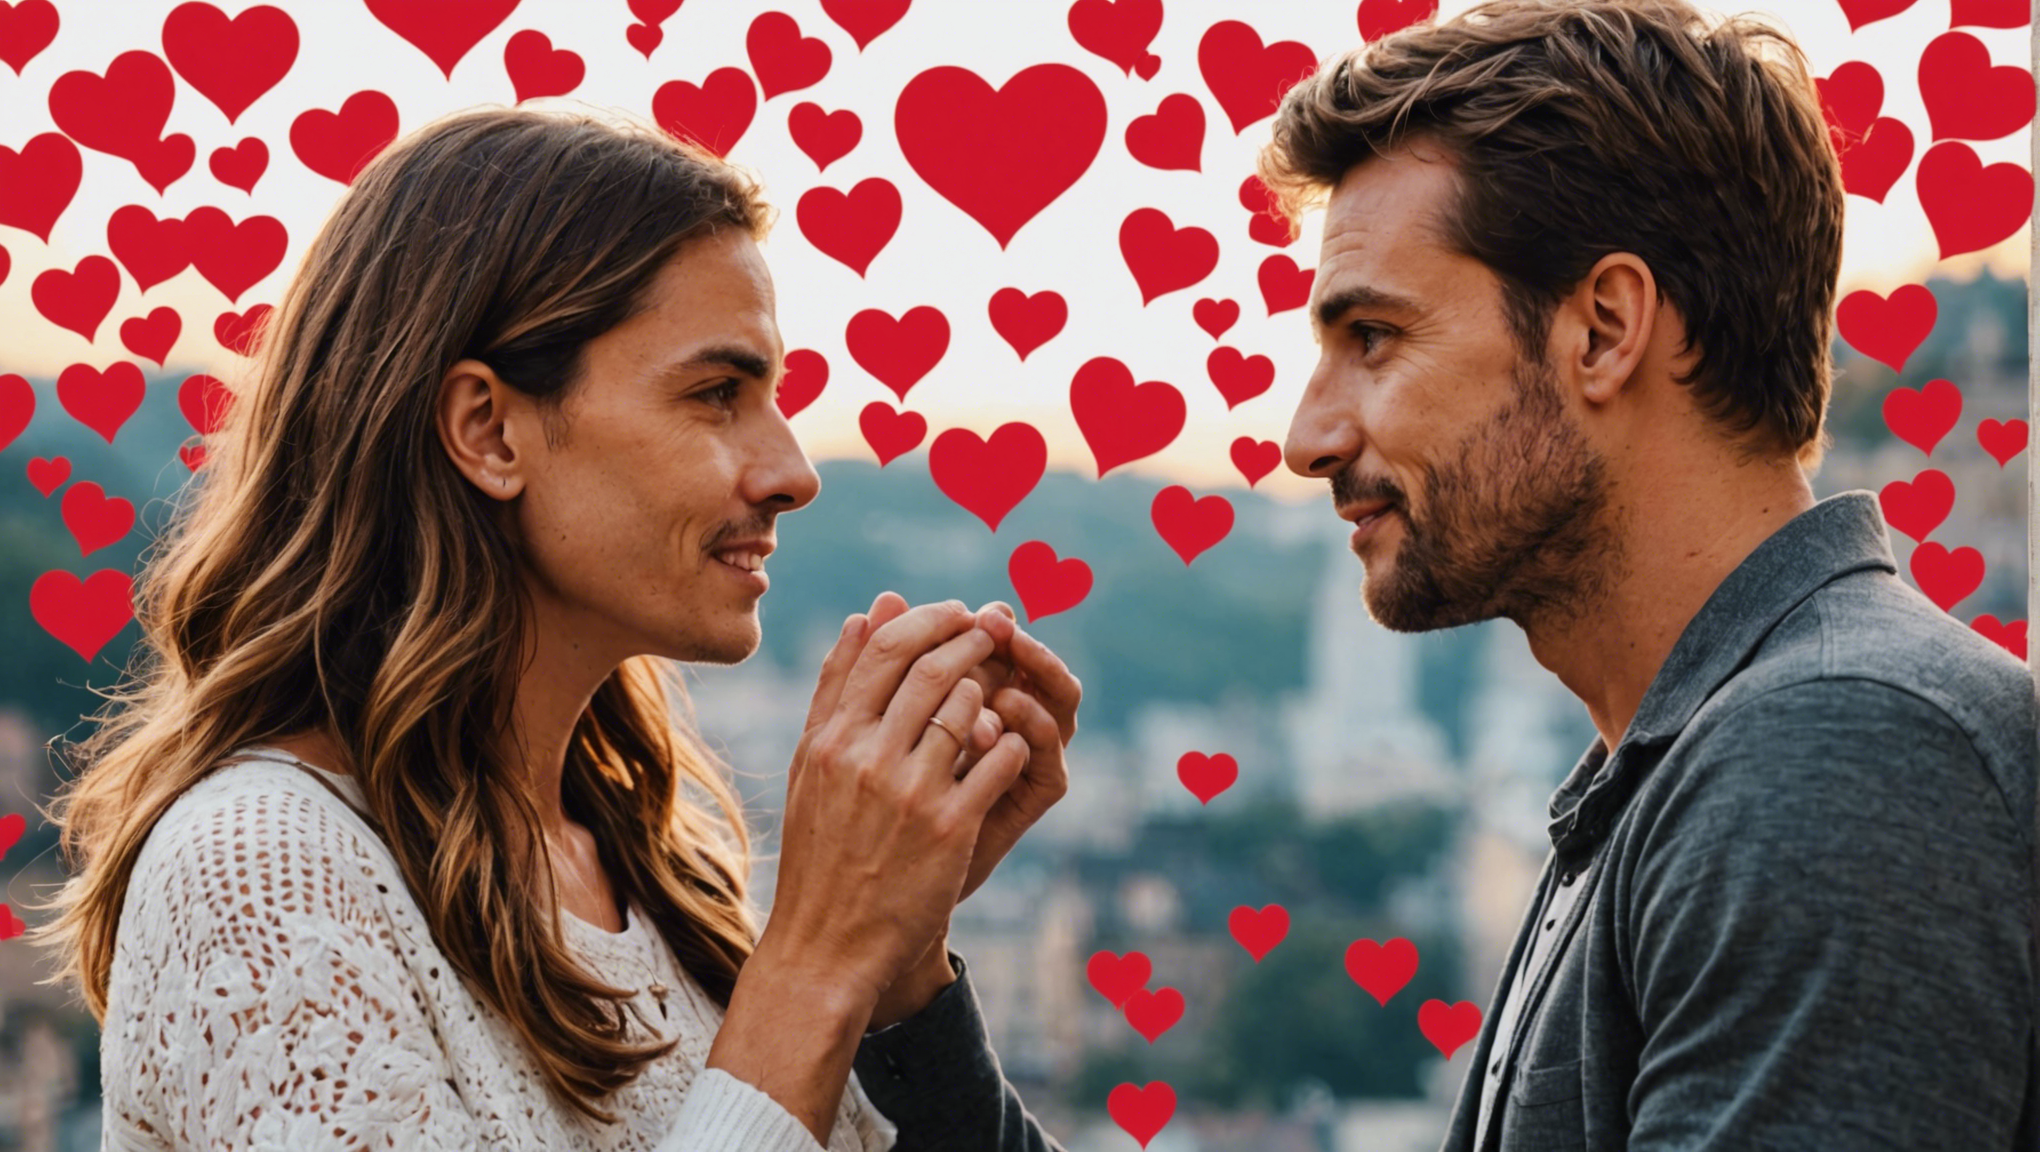 découvrez les réponses aux questions fréquemment posées sur l'amour et les relations dans cet article informatif.